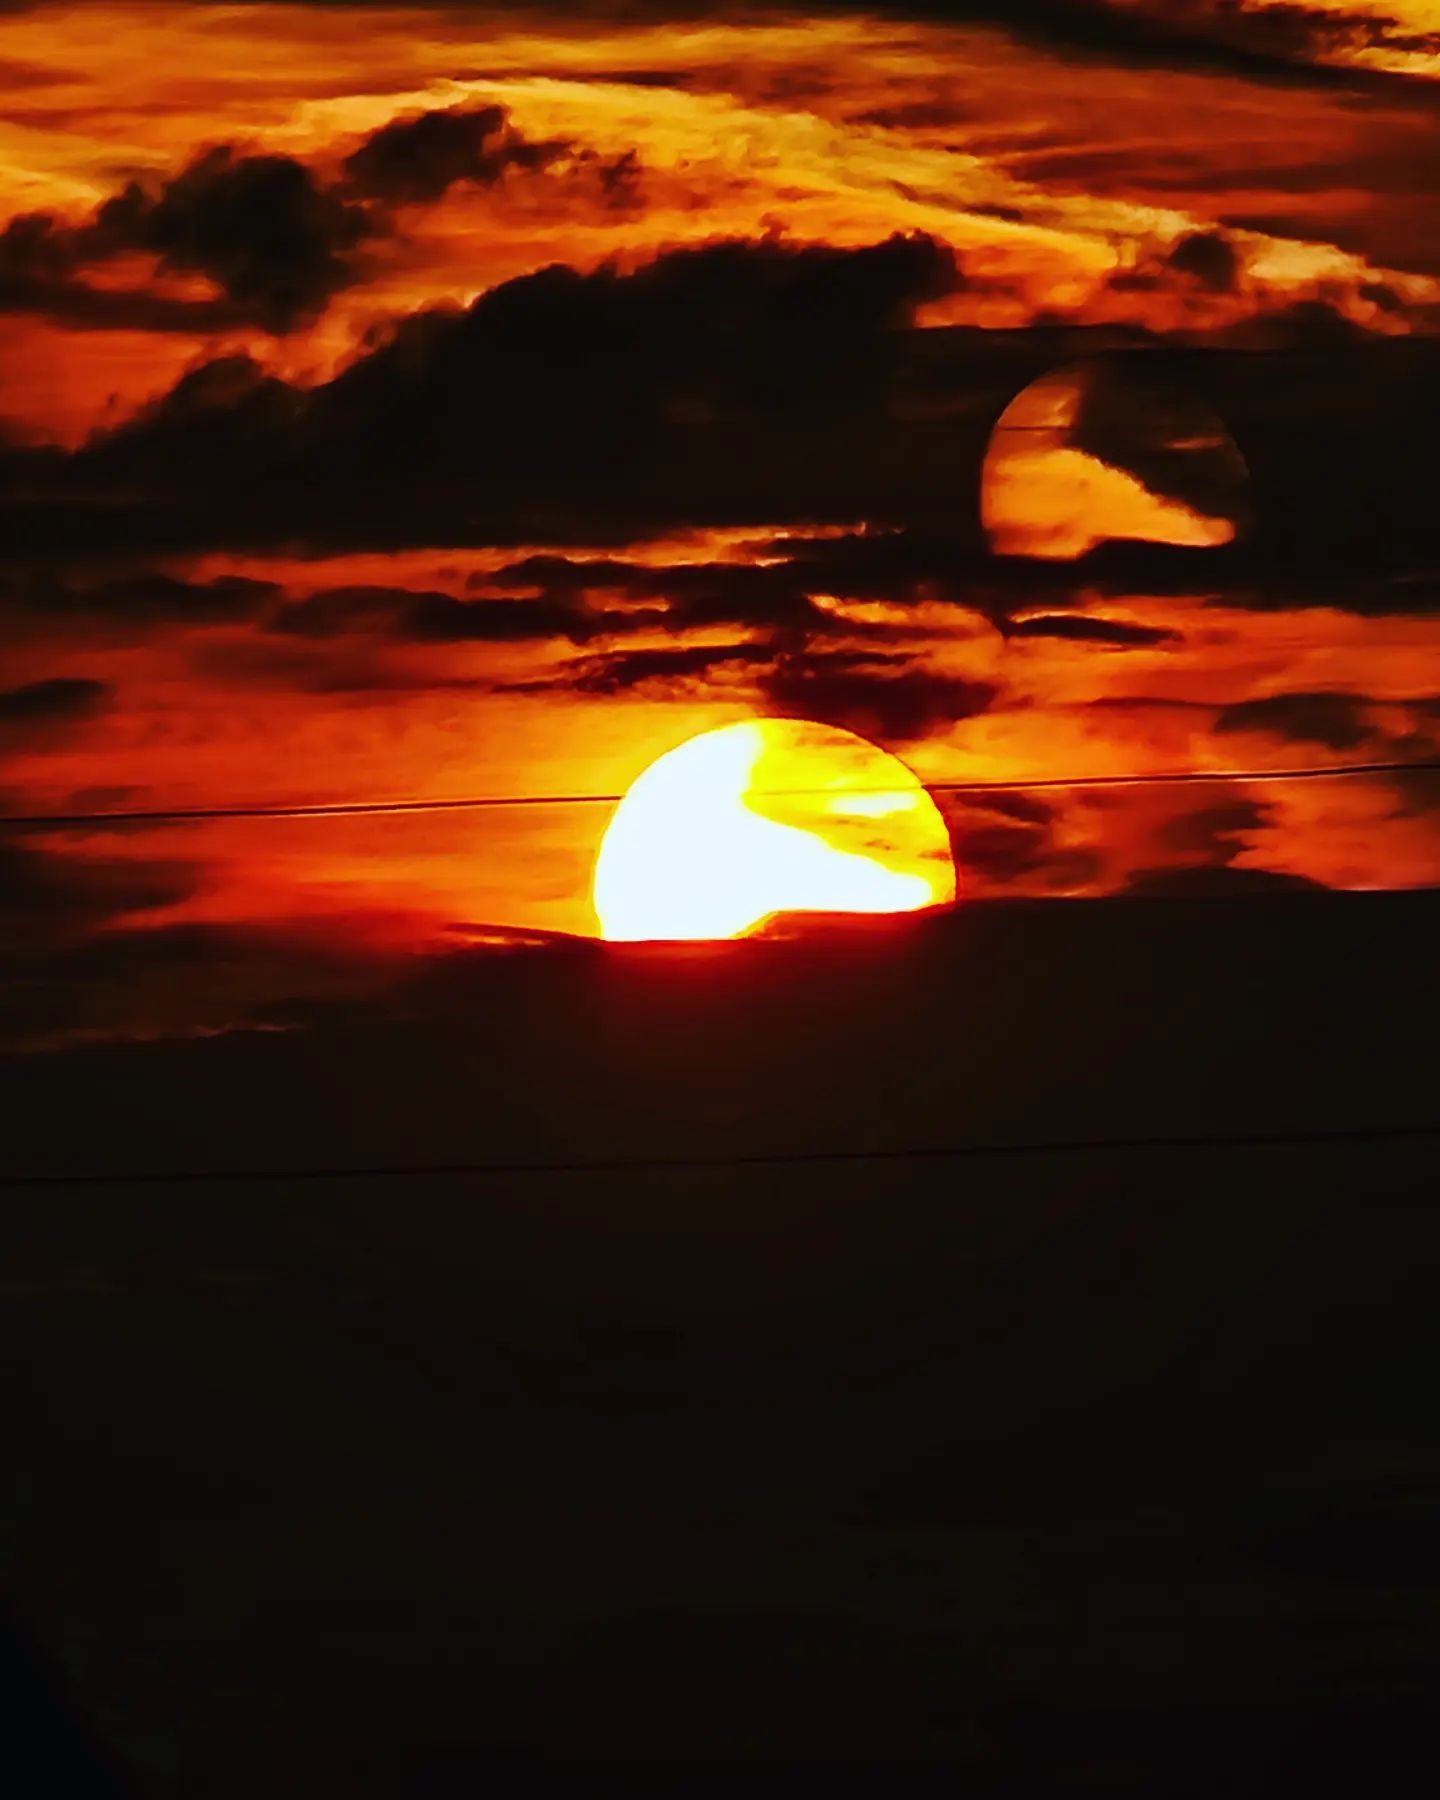 Při slunce západu 😉

#slunce #zapadslunce #tramonto #sunset  #sonnenuntergang #obloha #nebe